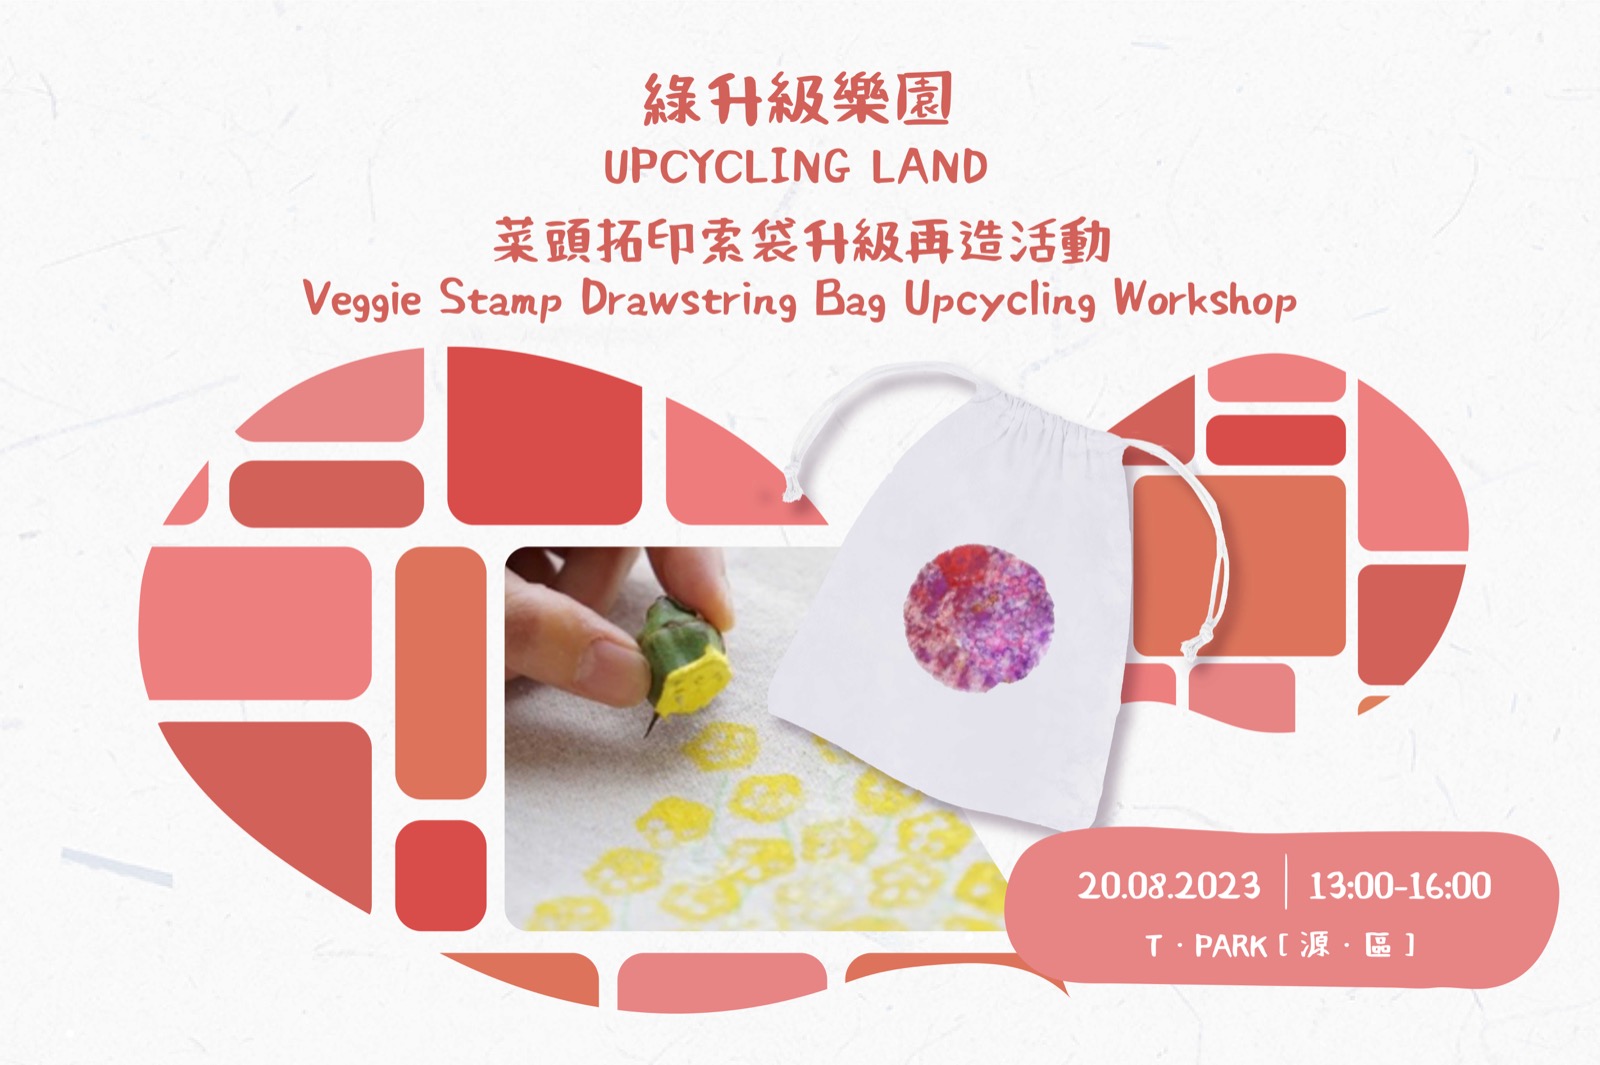 Pop-up Event: Veggie Stamp Drawstring Bag Upcycling Workshop